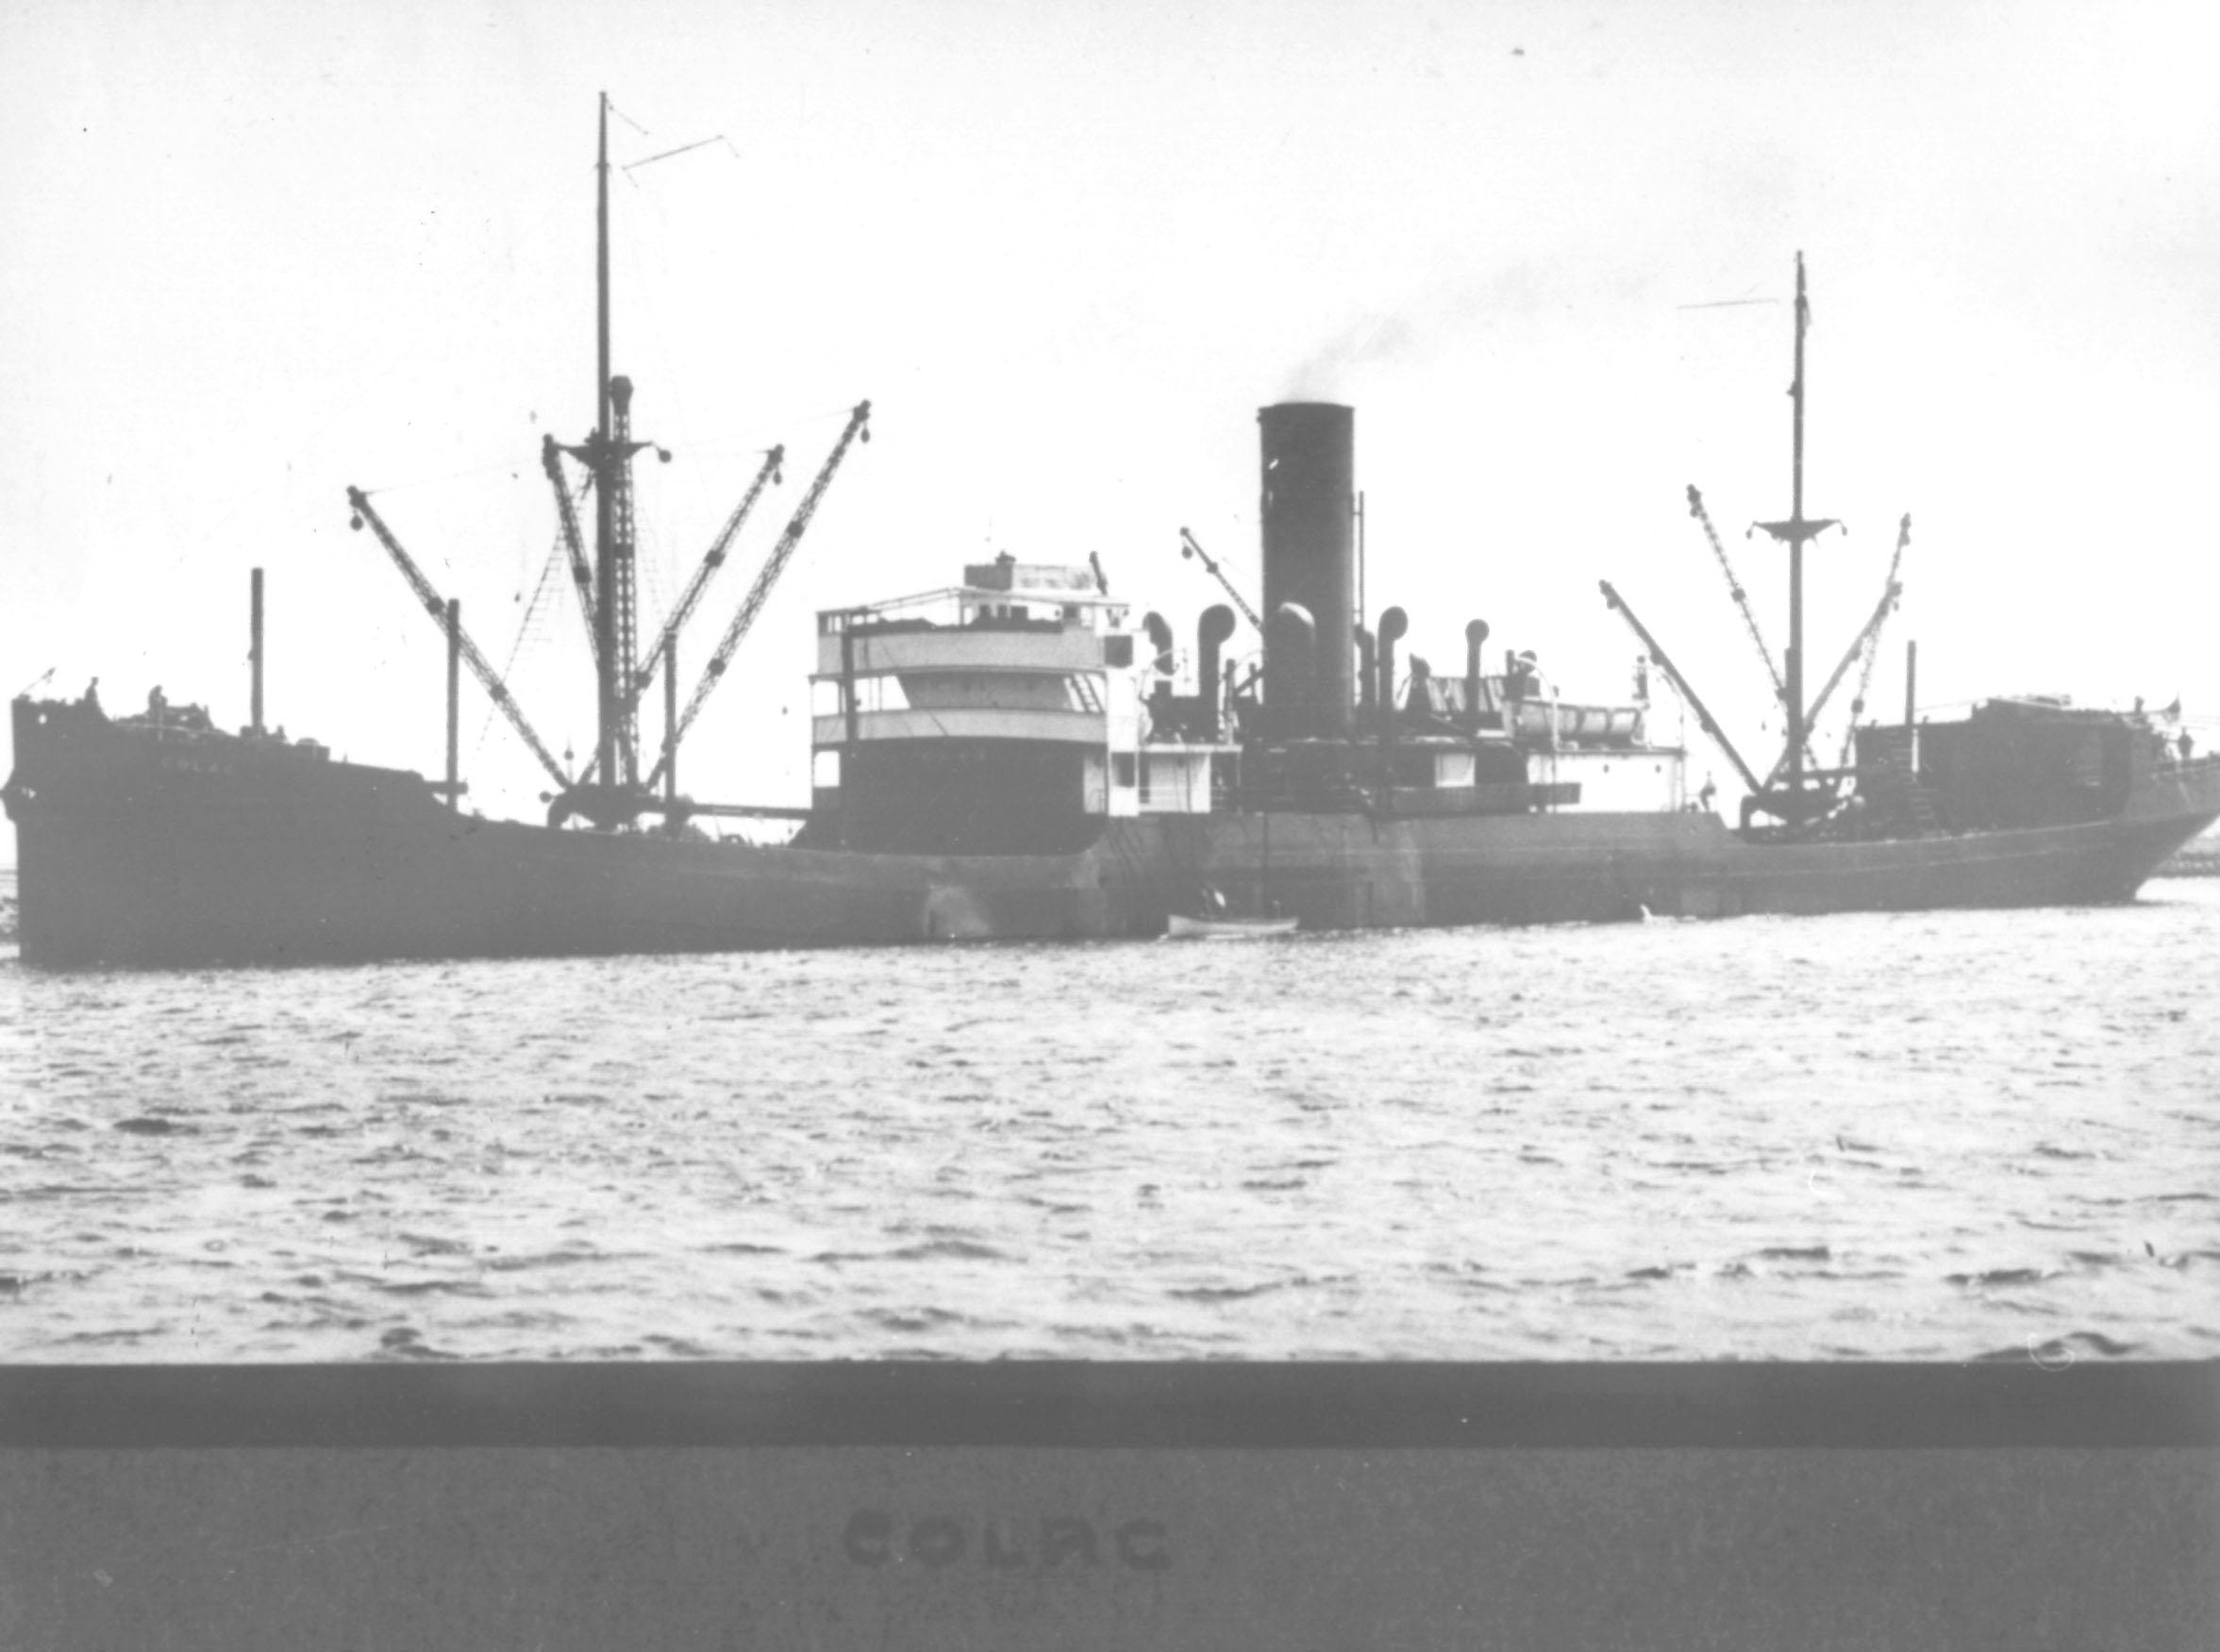 General Cargo vessel "Colac", ex 'Dinoga', built in 1920.